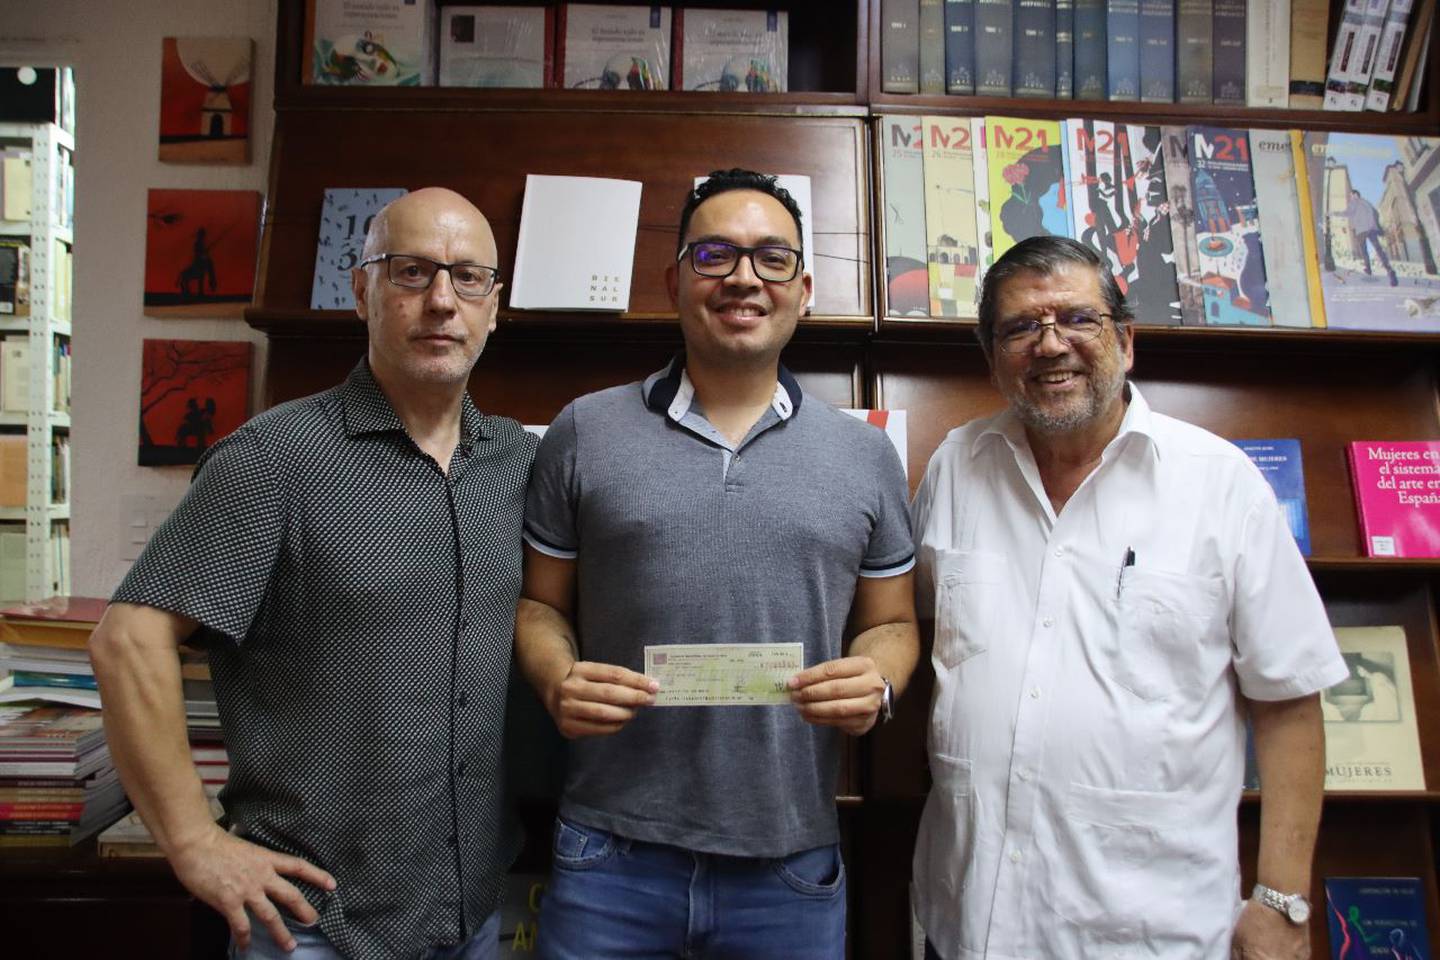 El año pasado, José Morales ganó un certamen de novela organizado por el Centro Cultural de España (CCE( y Uruk Editores. Acá el escritor posa junto al director del CCE, Ricardo Ramón Jarne, y el director de Uruk Editores, Óscar Castillo.